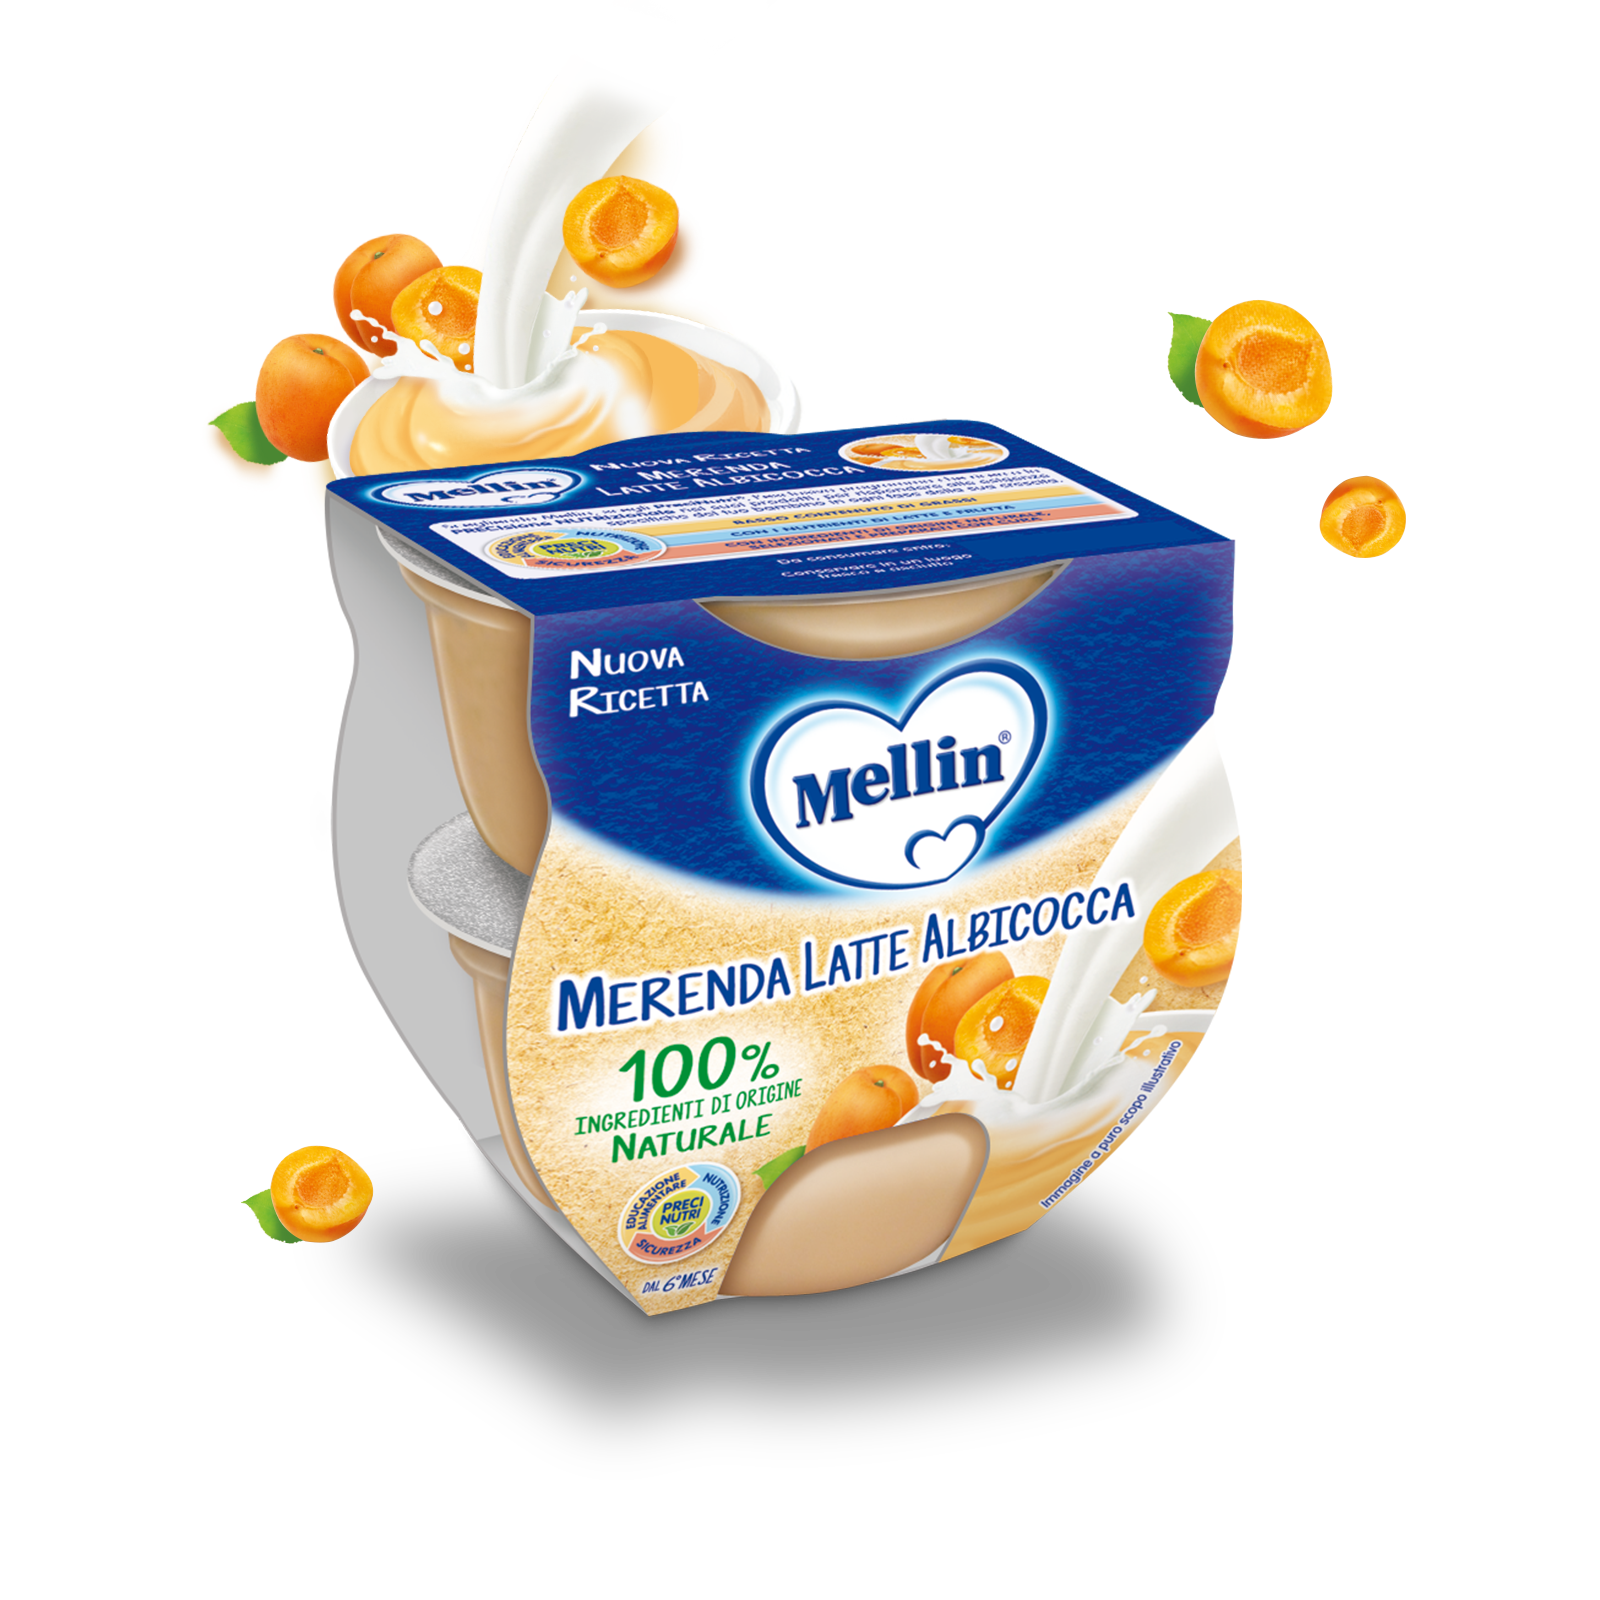 Merenda latte e albicocca Confezione da 100 g | Mellin